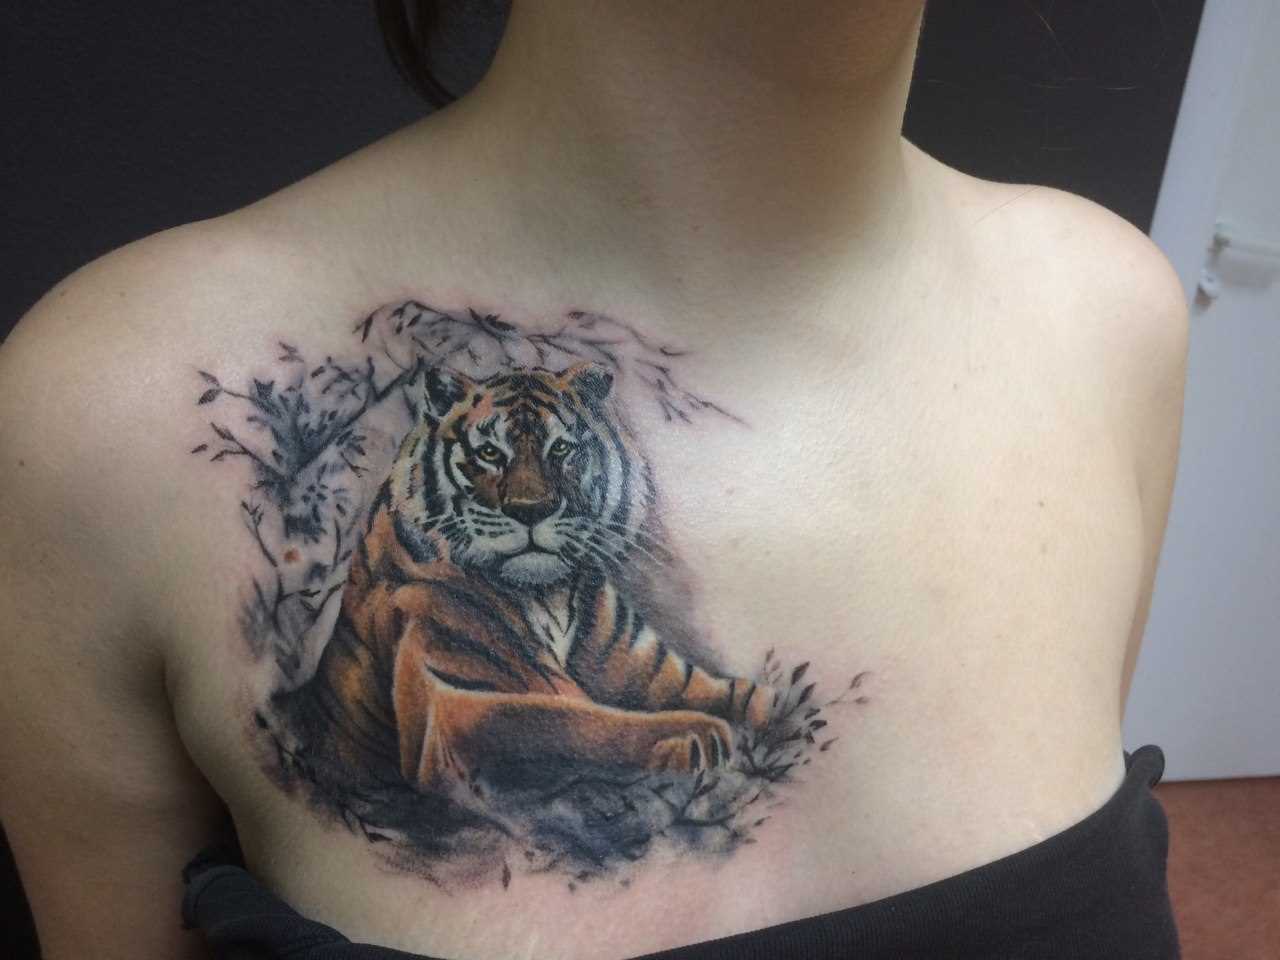 A tatuagem no peito da menina - tigre